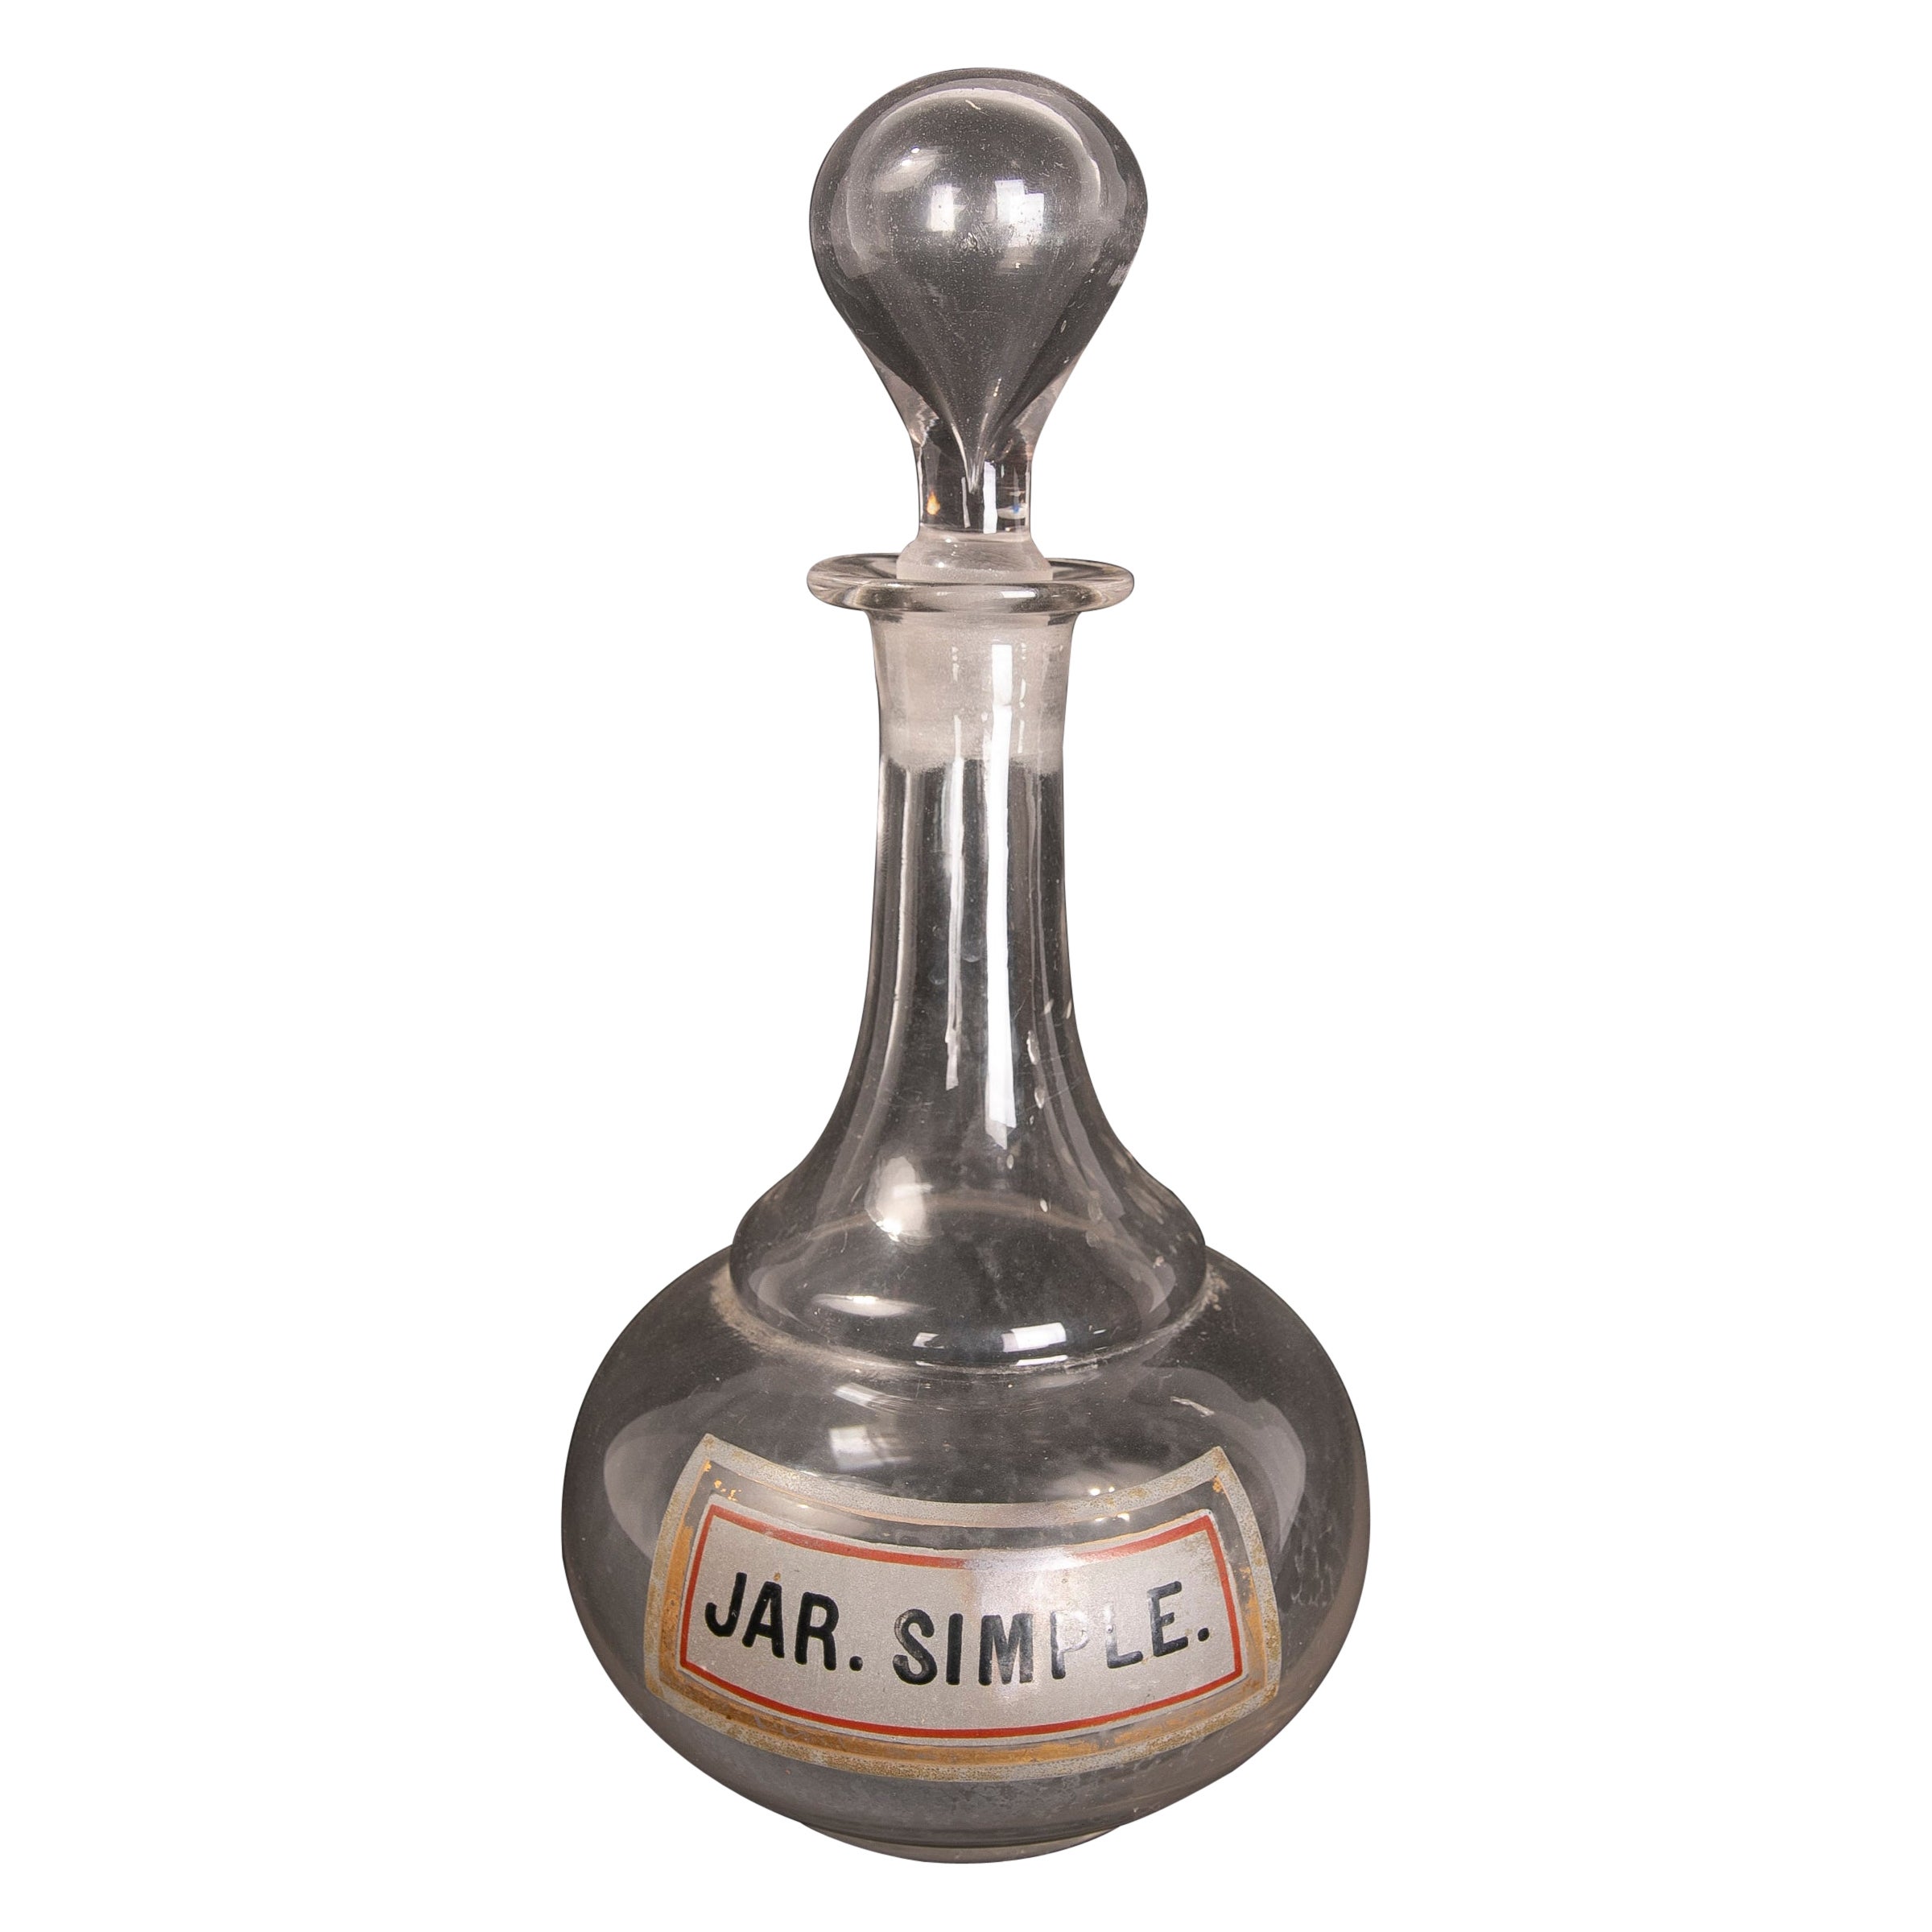 Pharmacy-Glasflasche des 19. Jahrhunderts mit bemalter Inschrift „Jar SImple“.